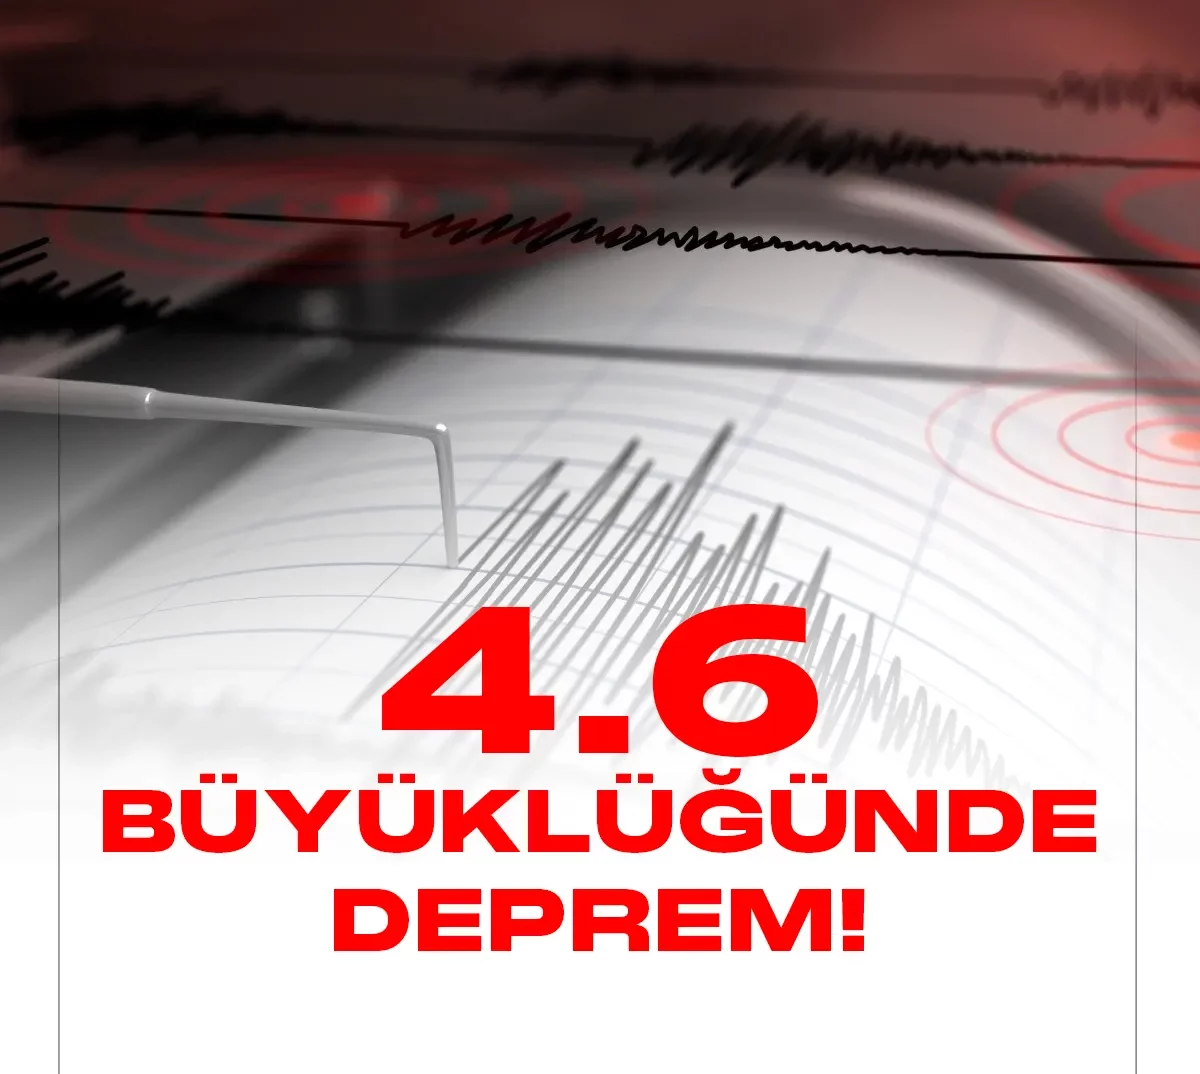 Osmaniye'de 4.6 büyüklüğünde deprem meydana geldi.